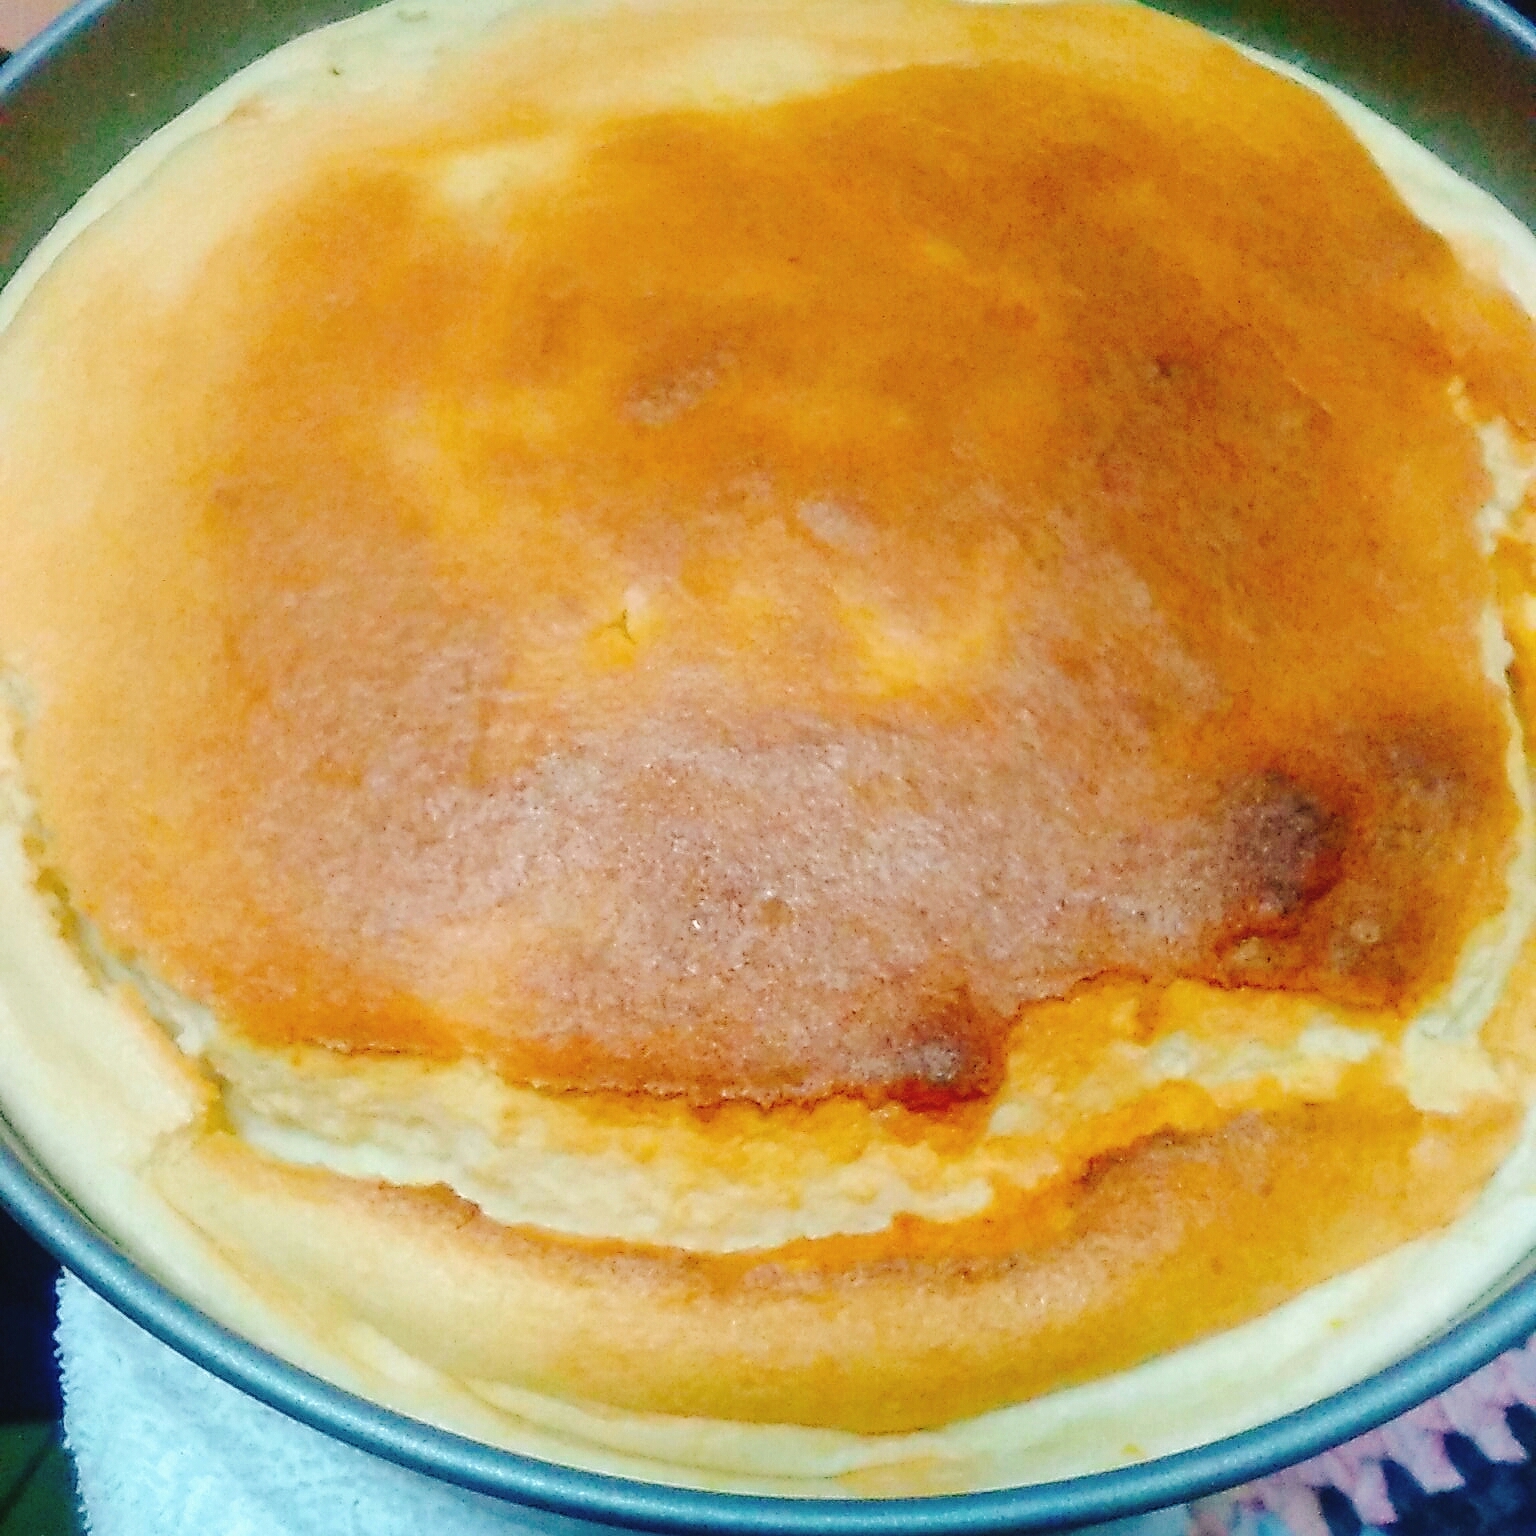 マンゴーベイクドチーズケーキ